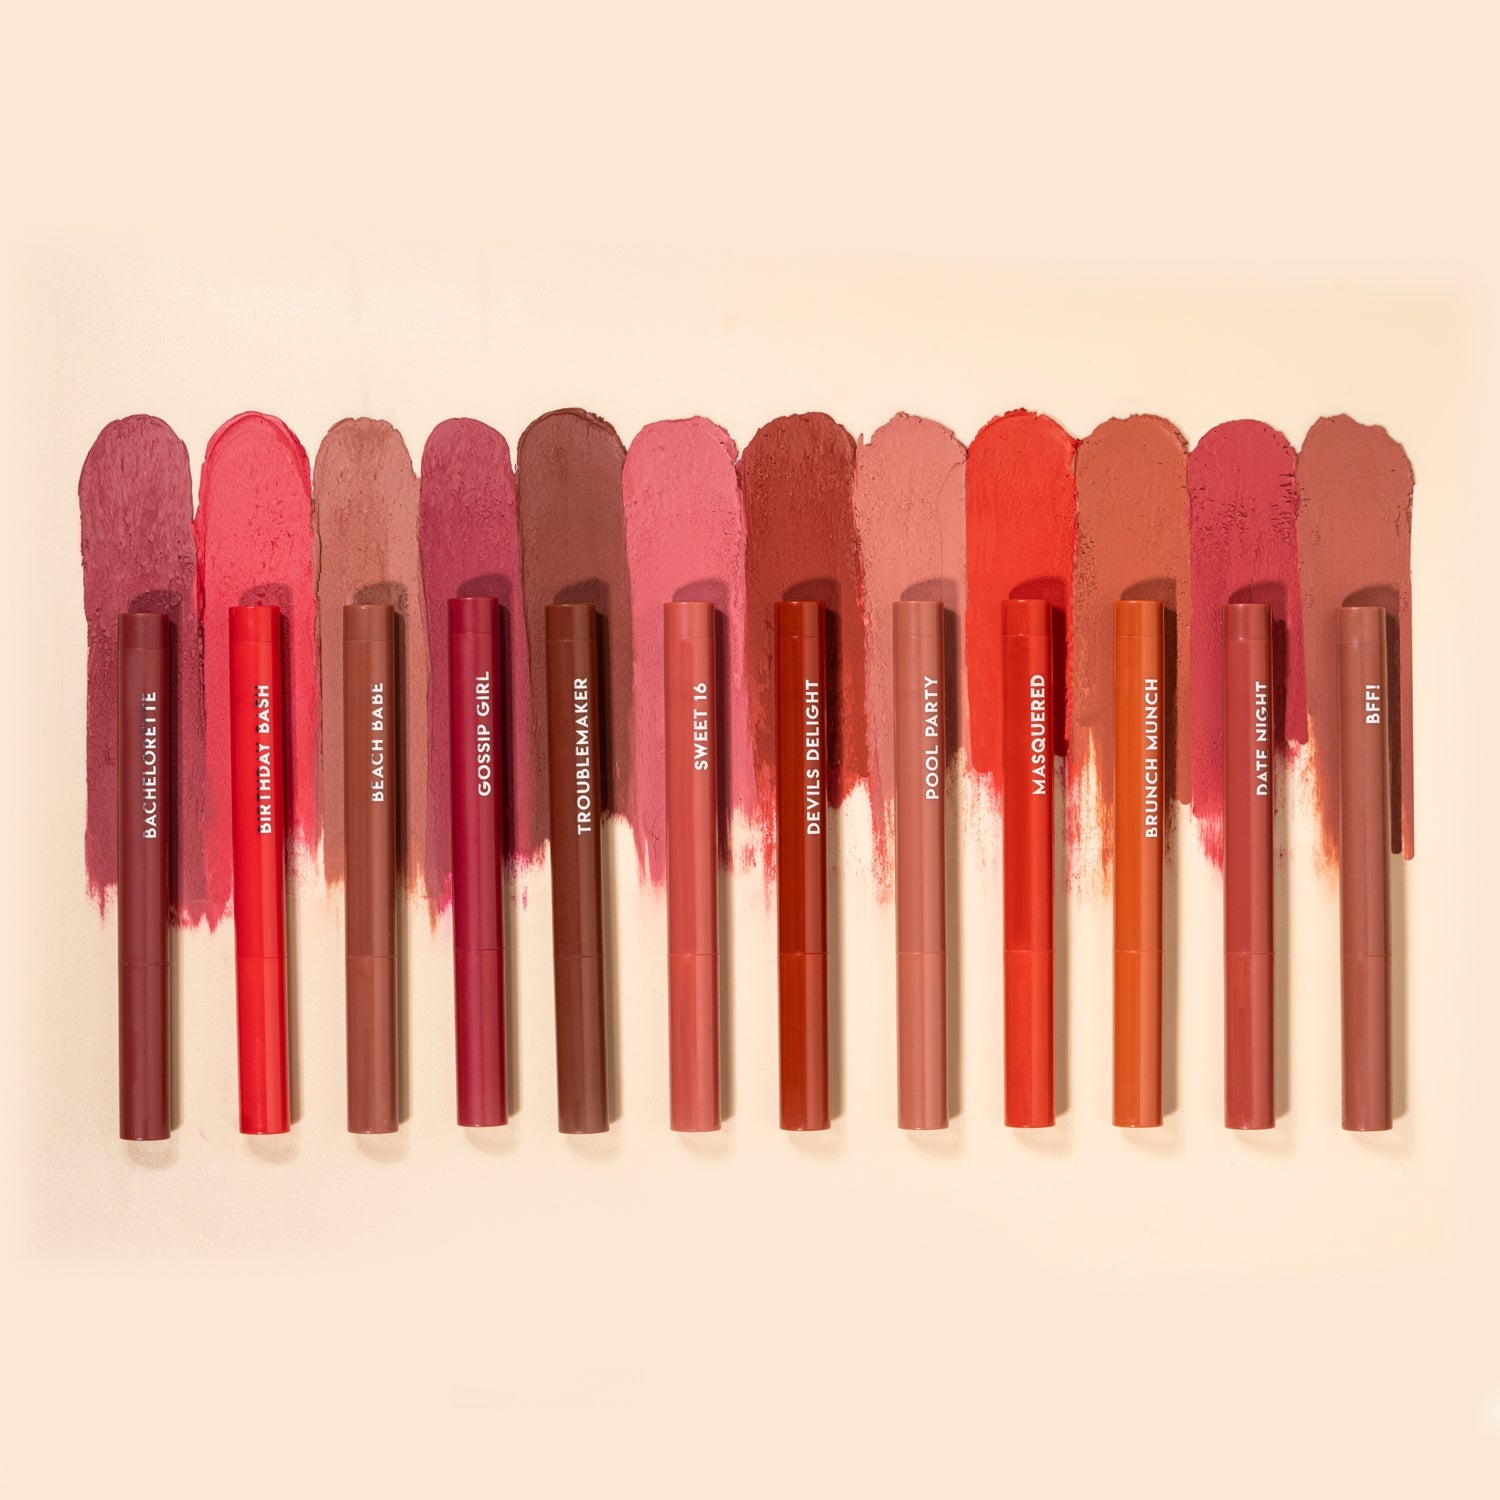 PAC Cosmetics Moody Matte Lipstick (1.6 gm) #Color_Devil's Delight